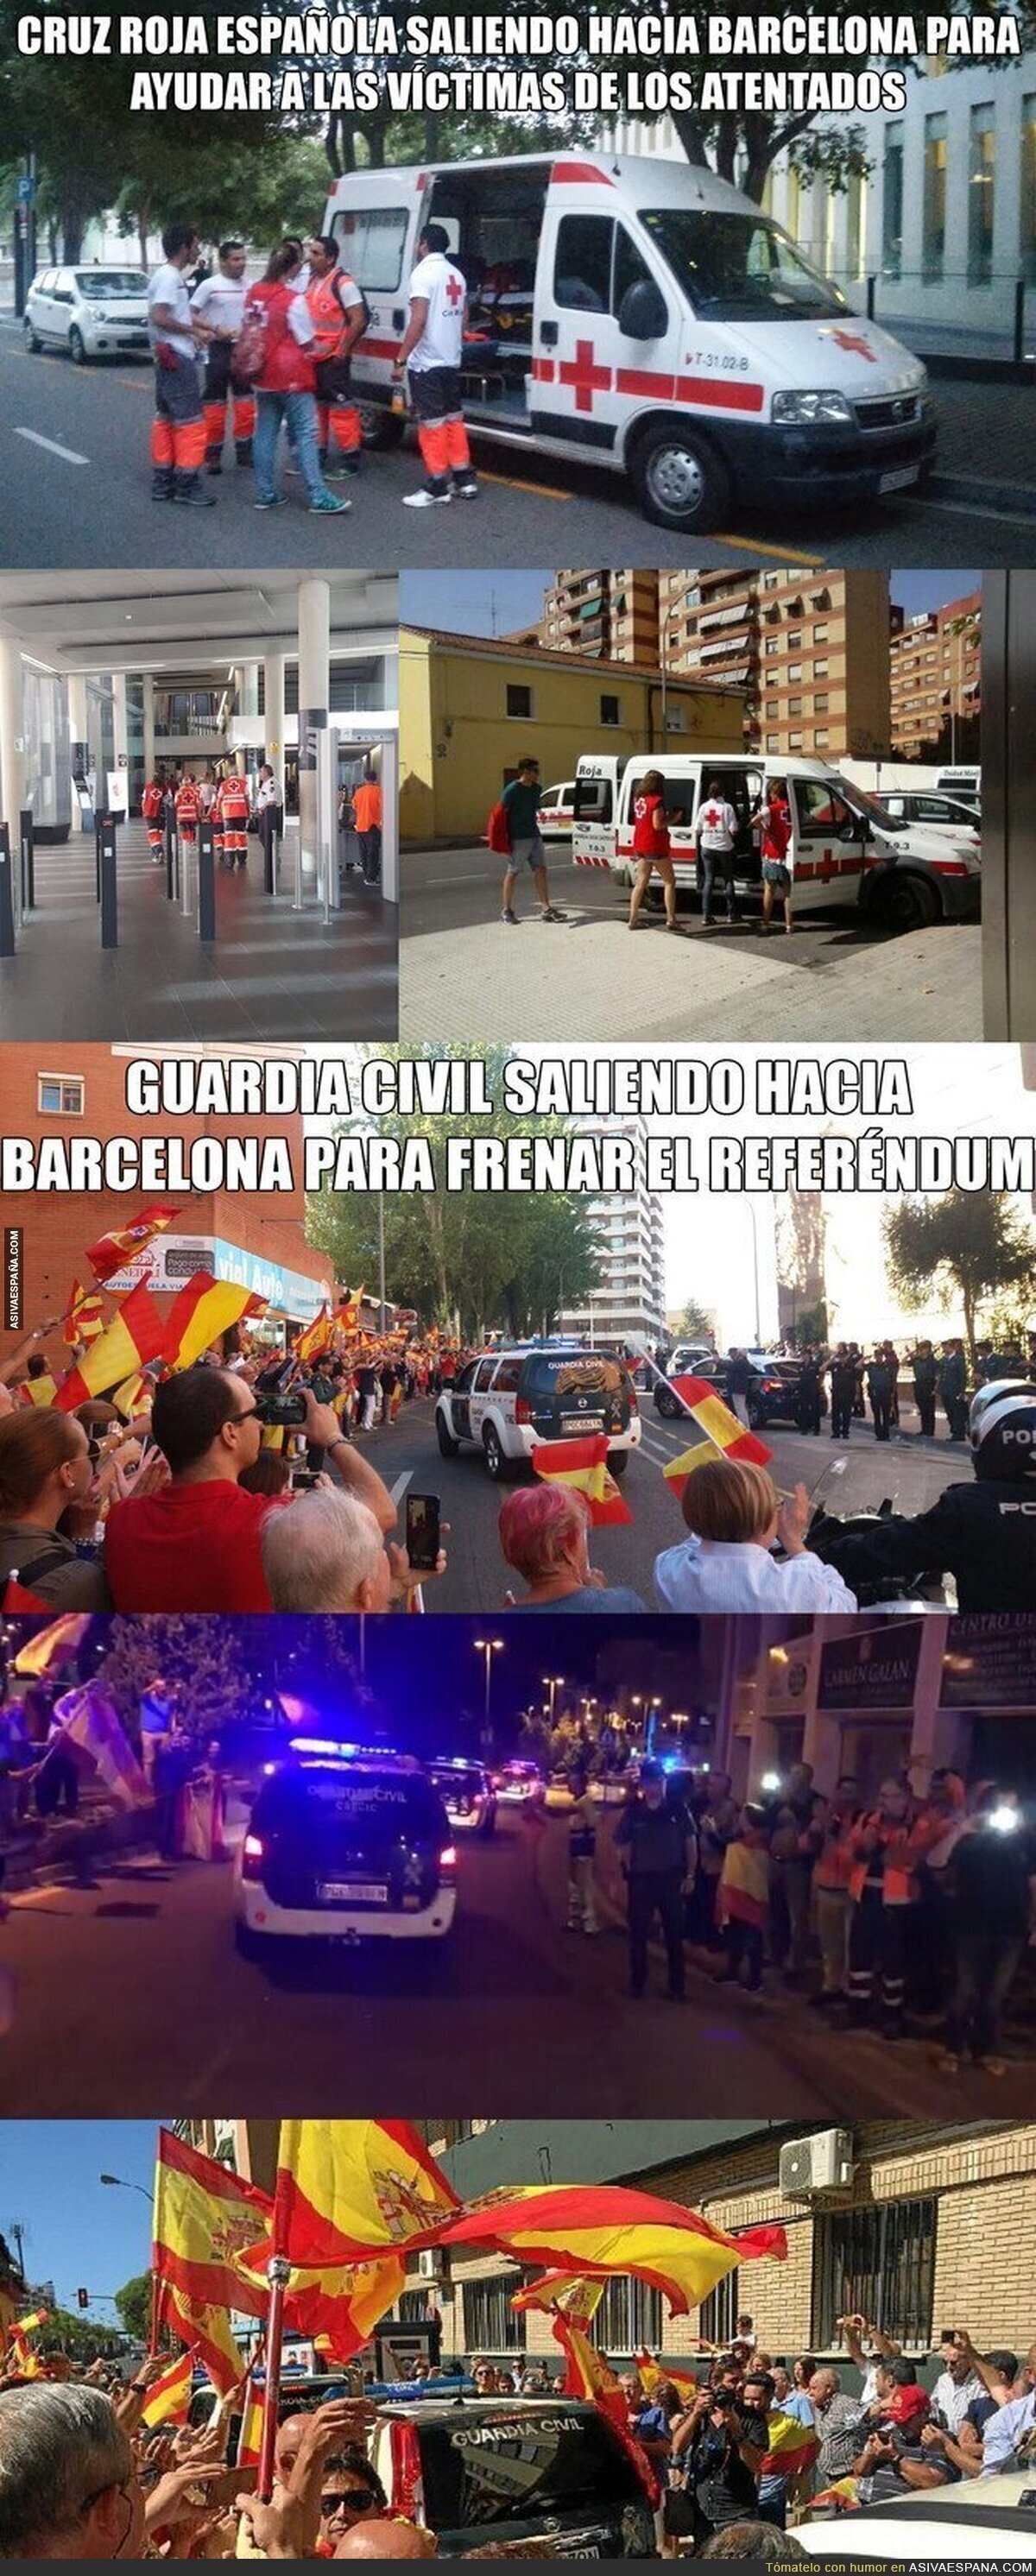 España resumida en una imagen